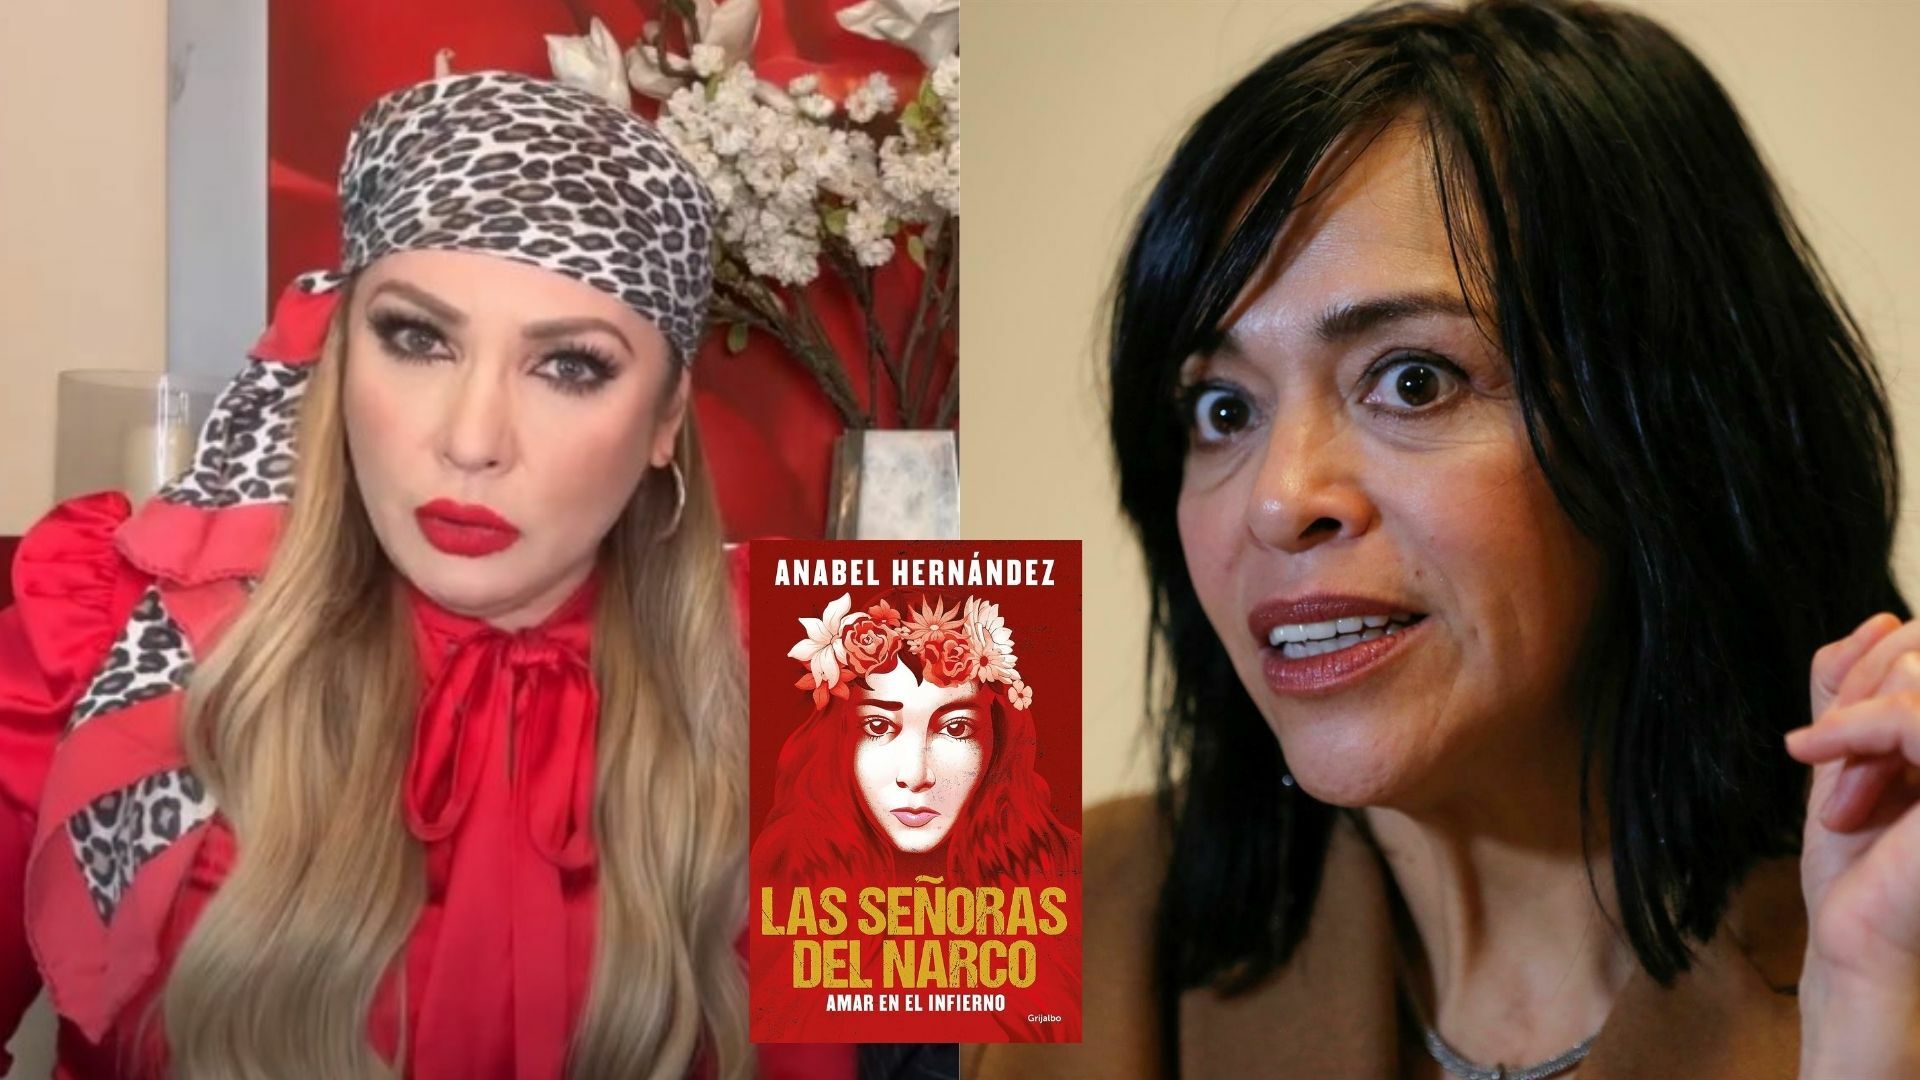 Paty Navidad aclara como conoció a Beltrán Leyva y señala inconsistencias de Anabel Hernández 